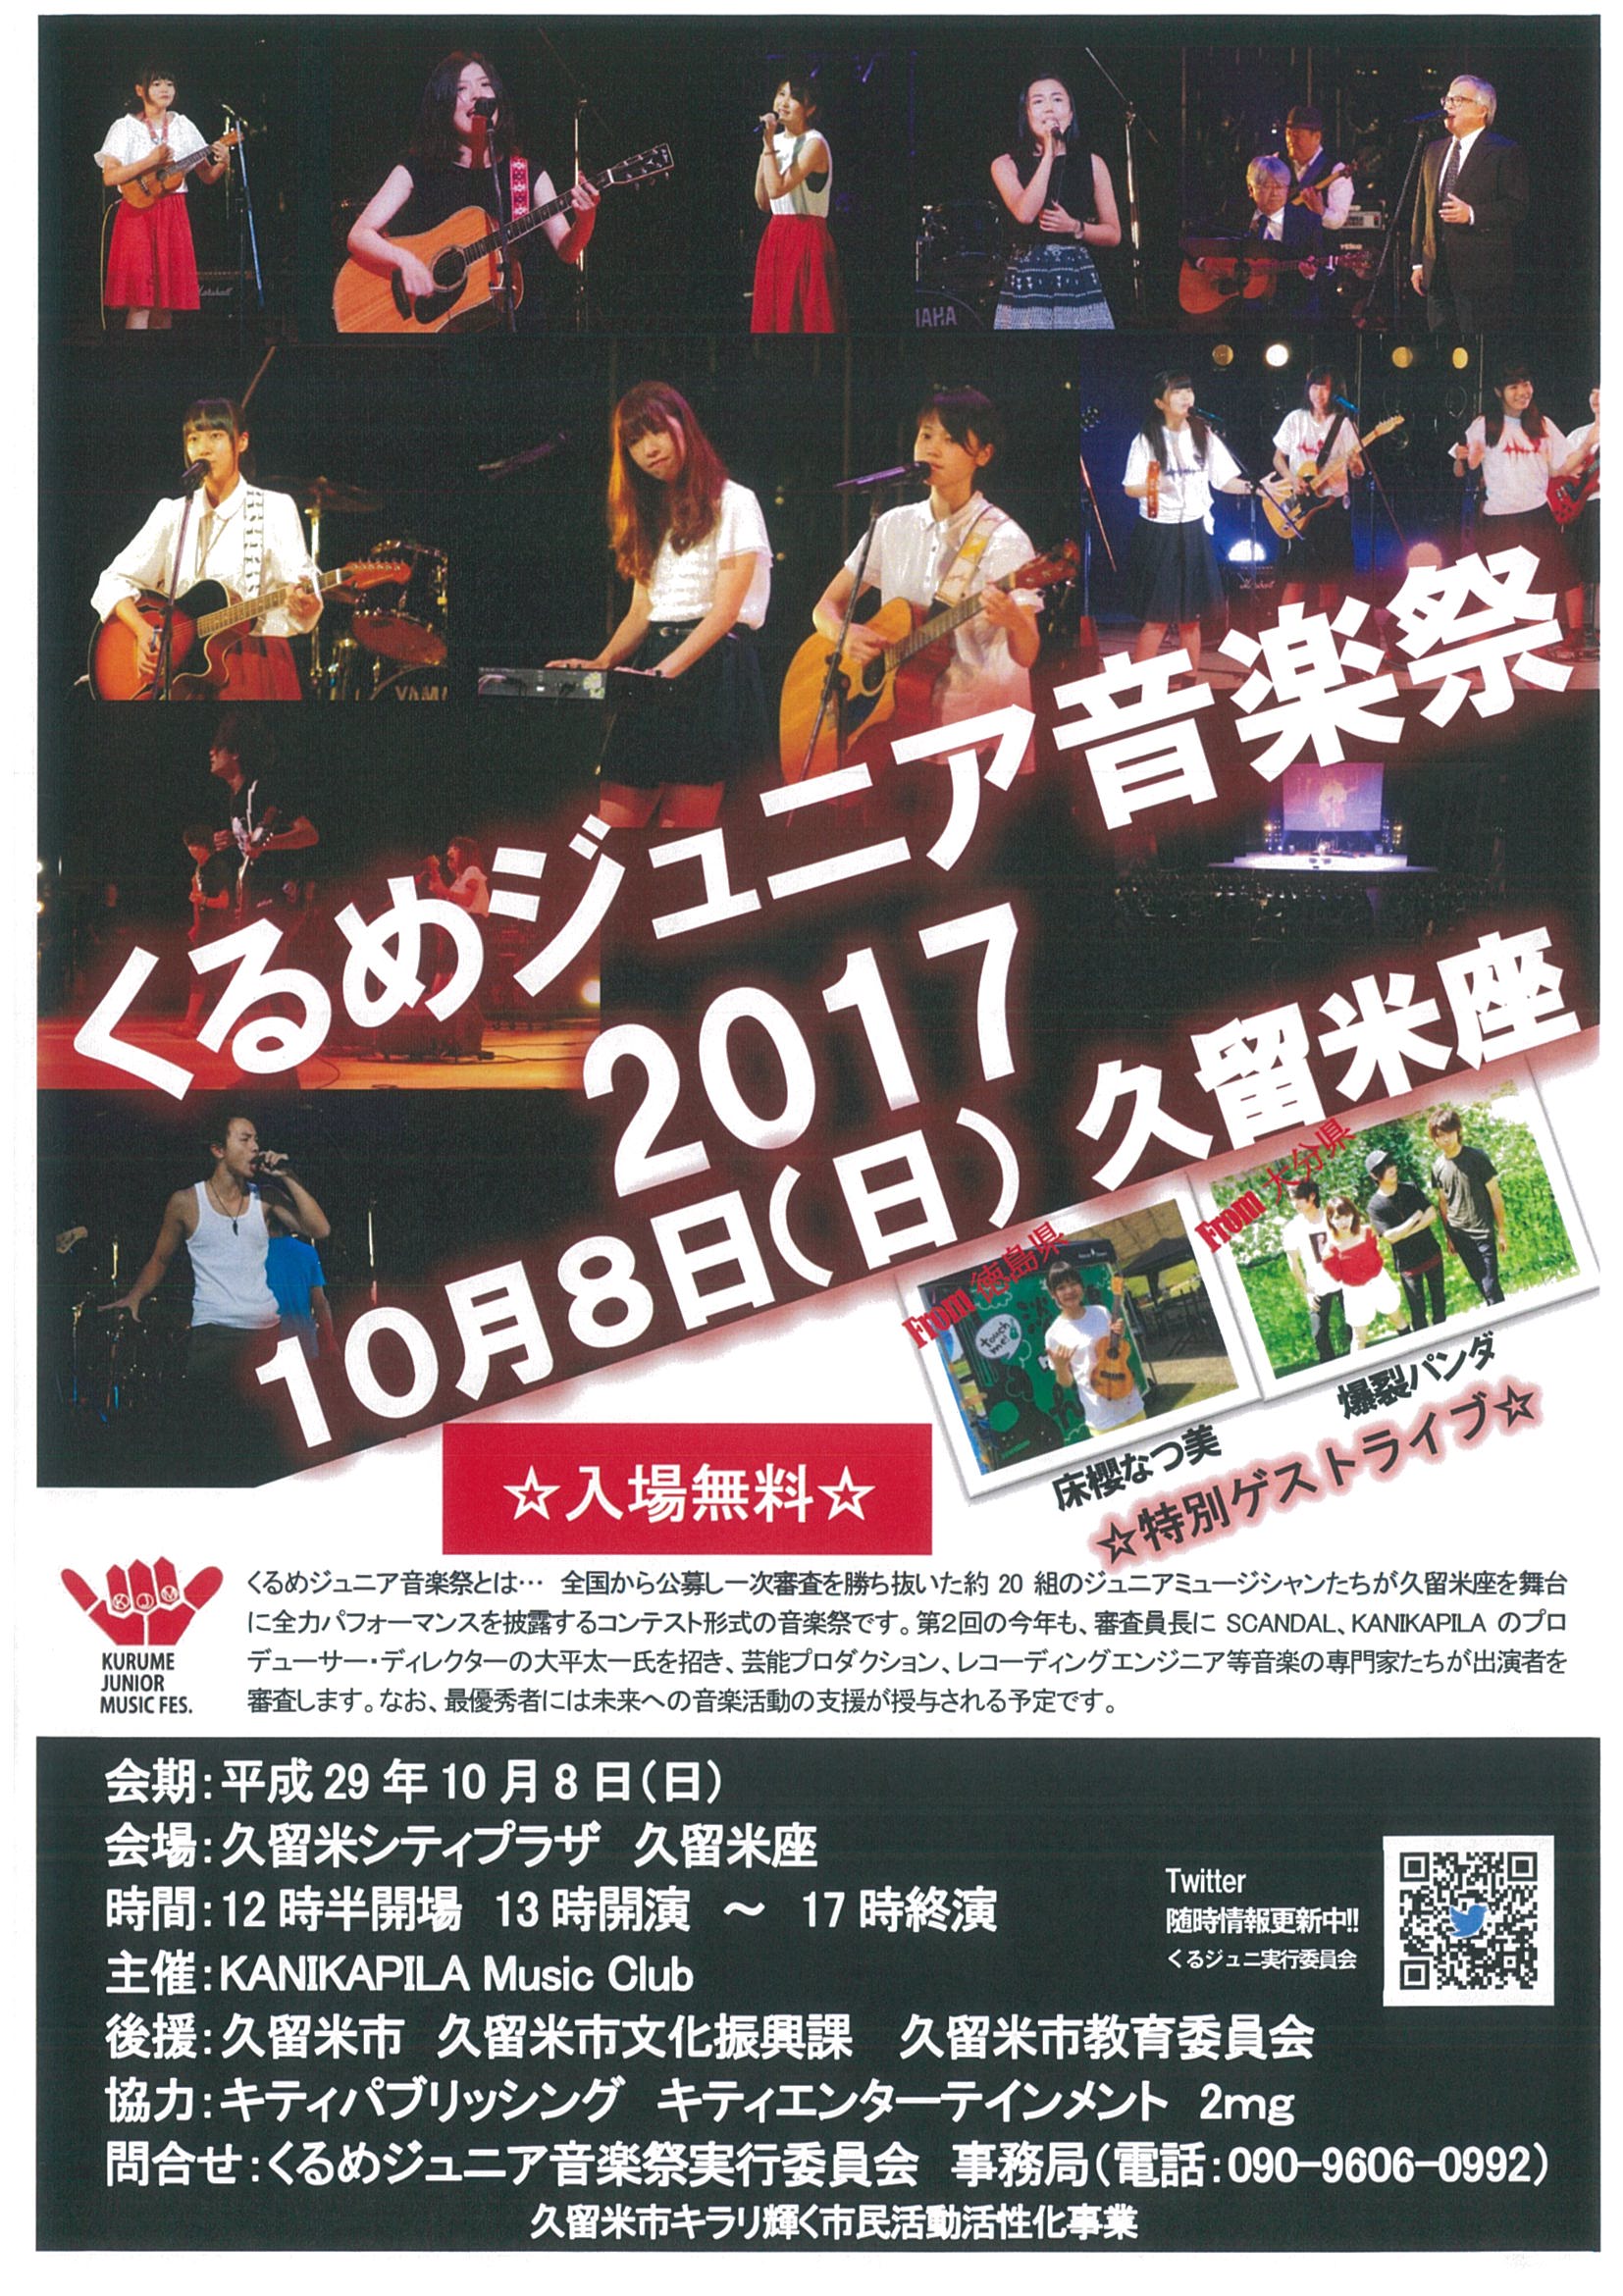 くるめジュニア音楽祭2017